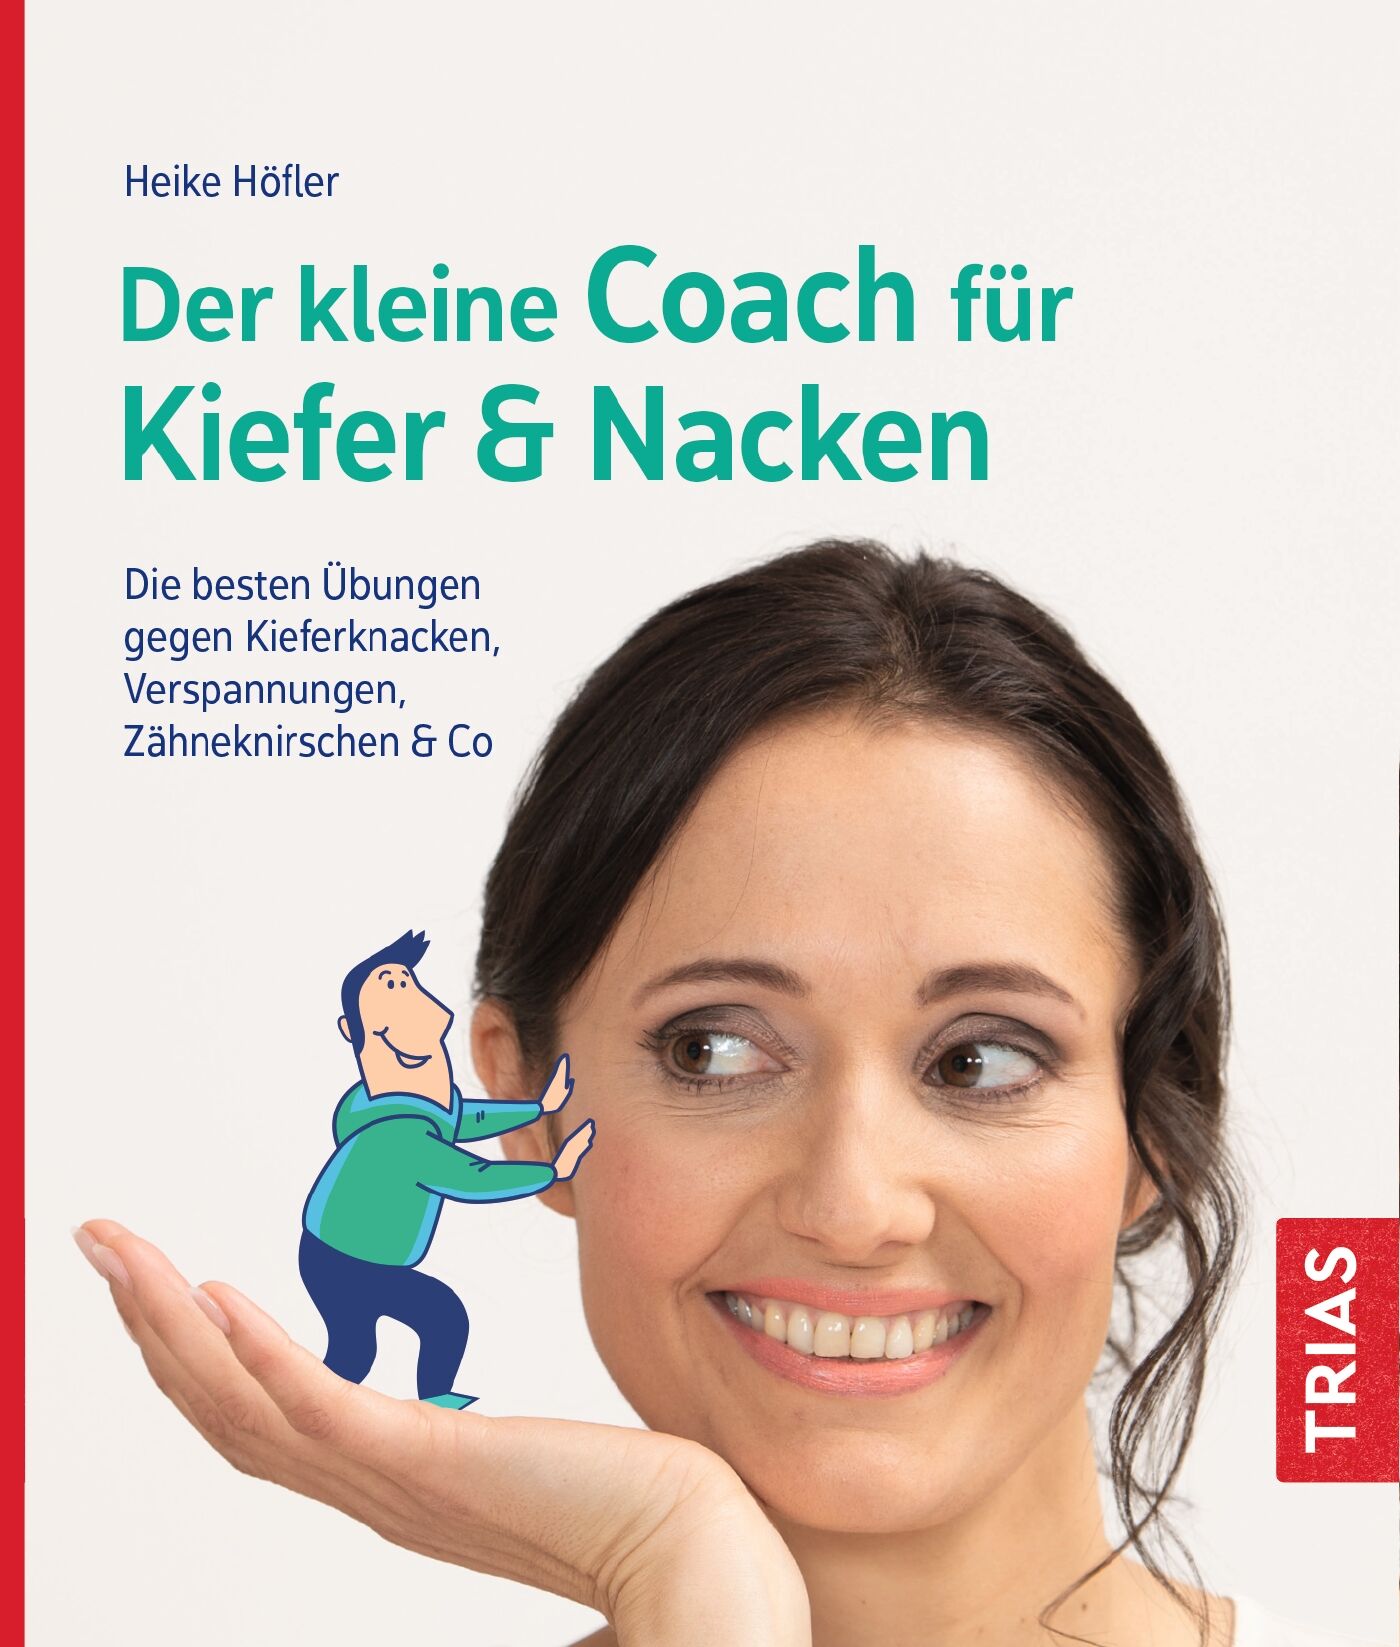 Der kleine Coach für Kiefer & Nacken, 9783432113845